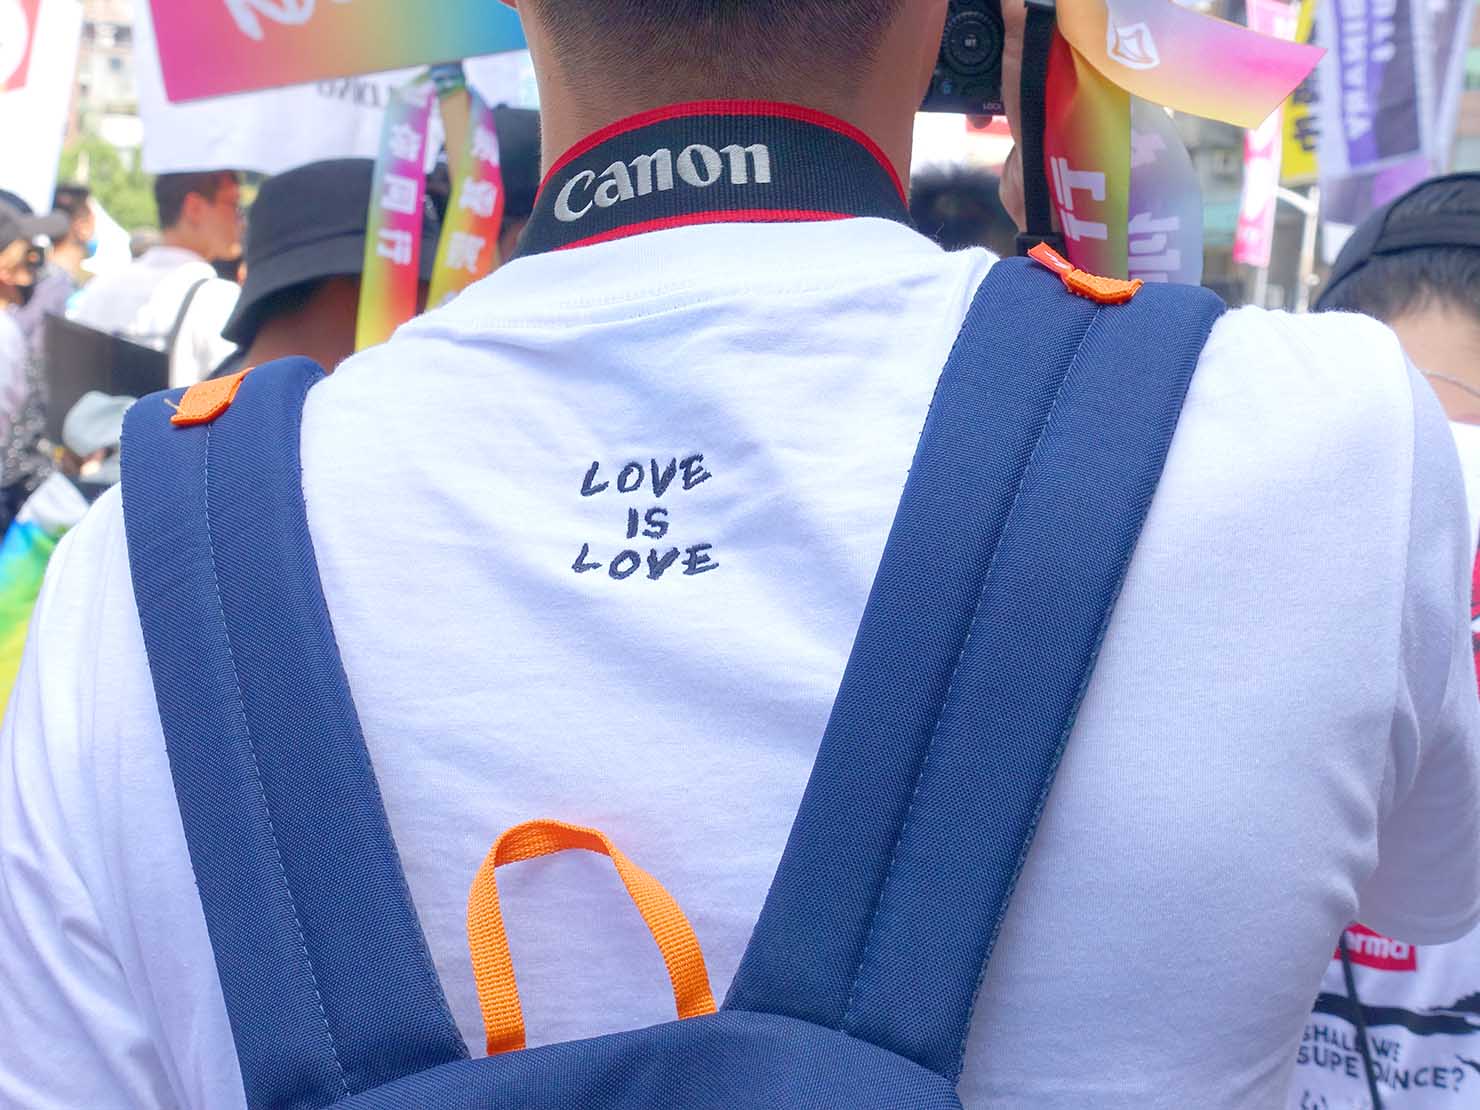 台湾・桃園のLGBTプライド「桃園彩虹野餐日」2020パレードで「LOVE IS LOVE」のTシャツを着る参加者